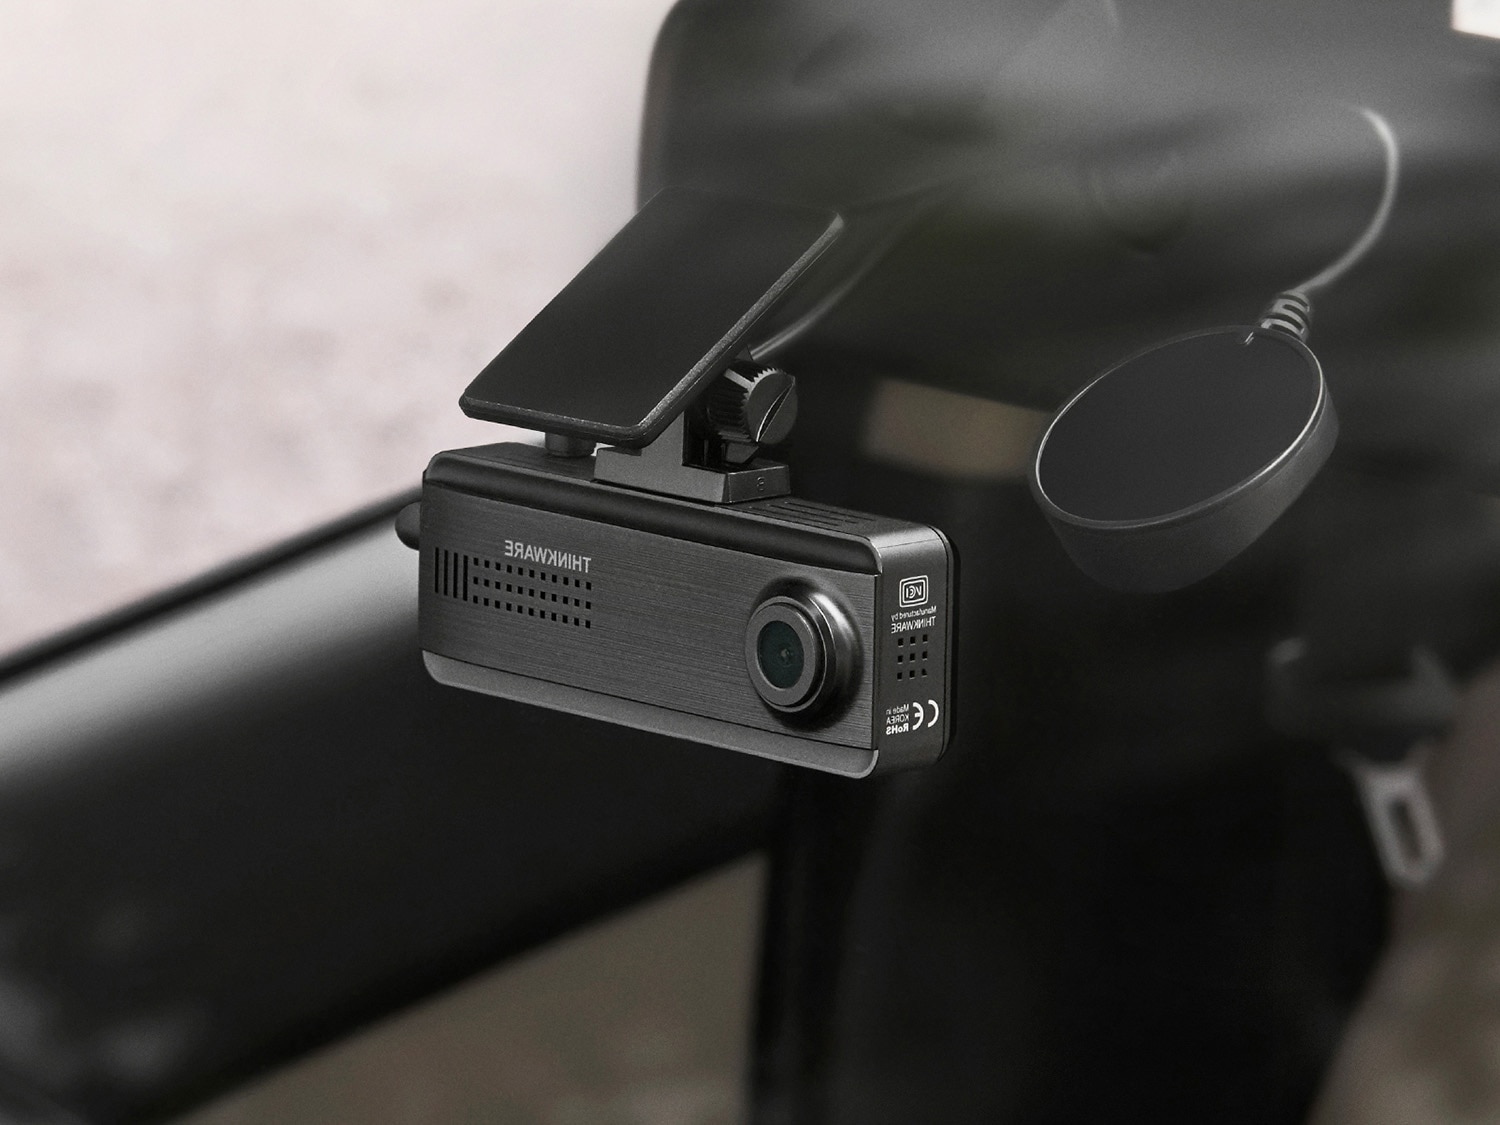 Motocam E6L 2CH Dual Wifi motorcycle dashcam - Dashcamdeal